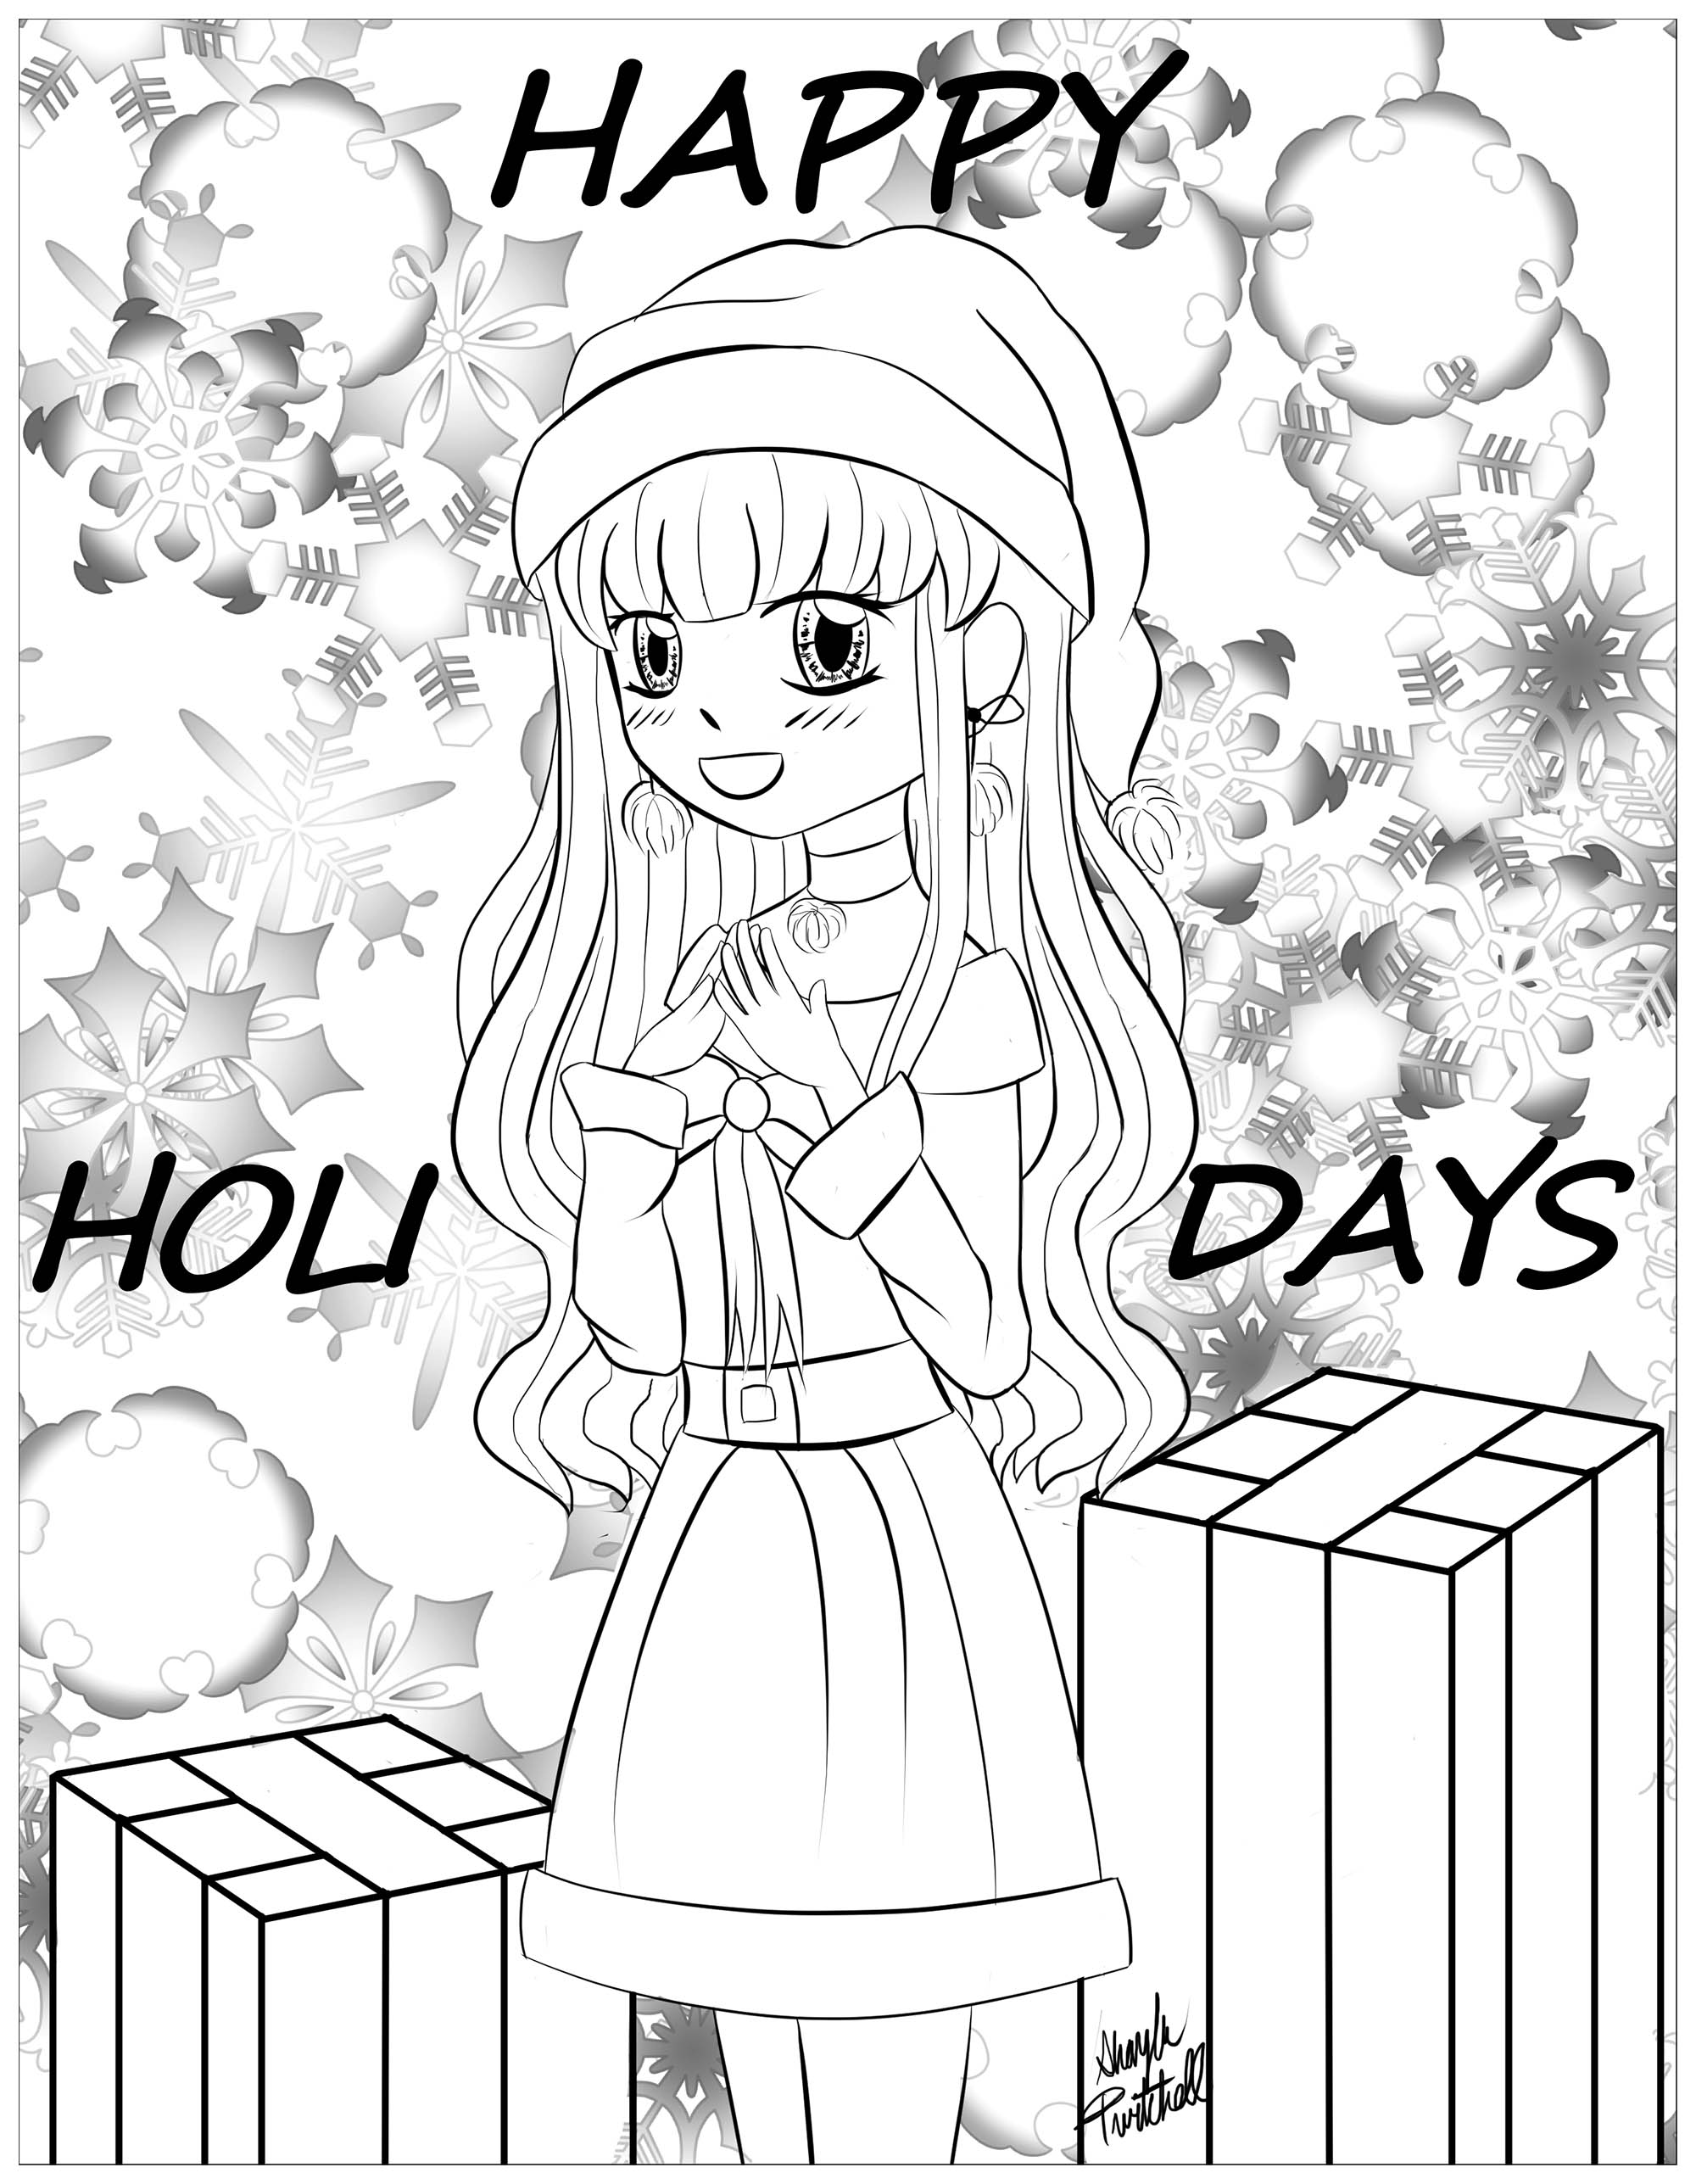 Christmas girl, Manga style coloring page